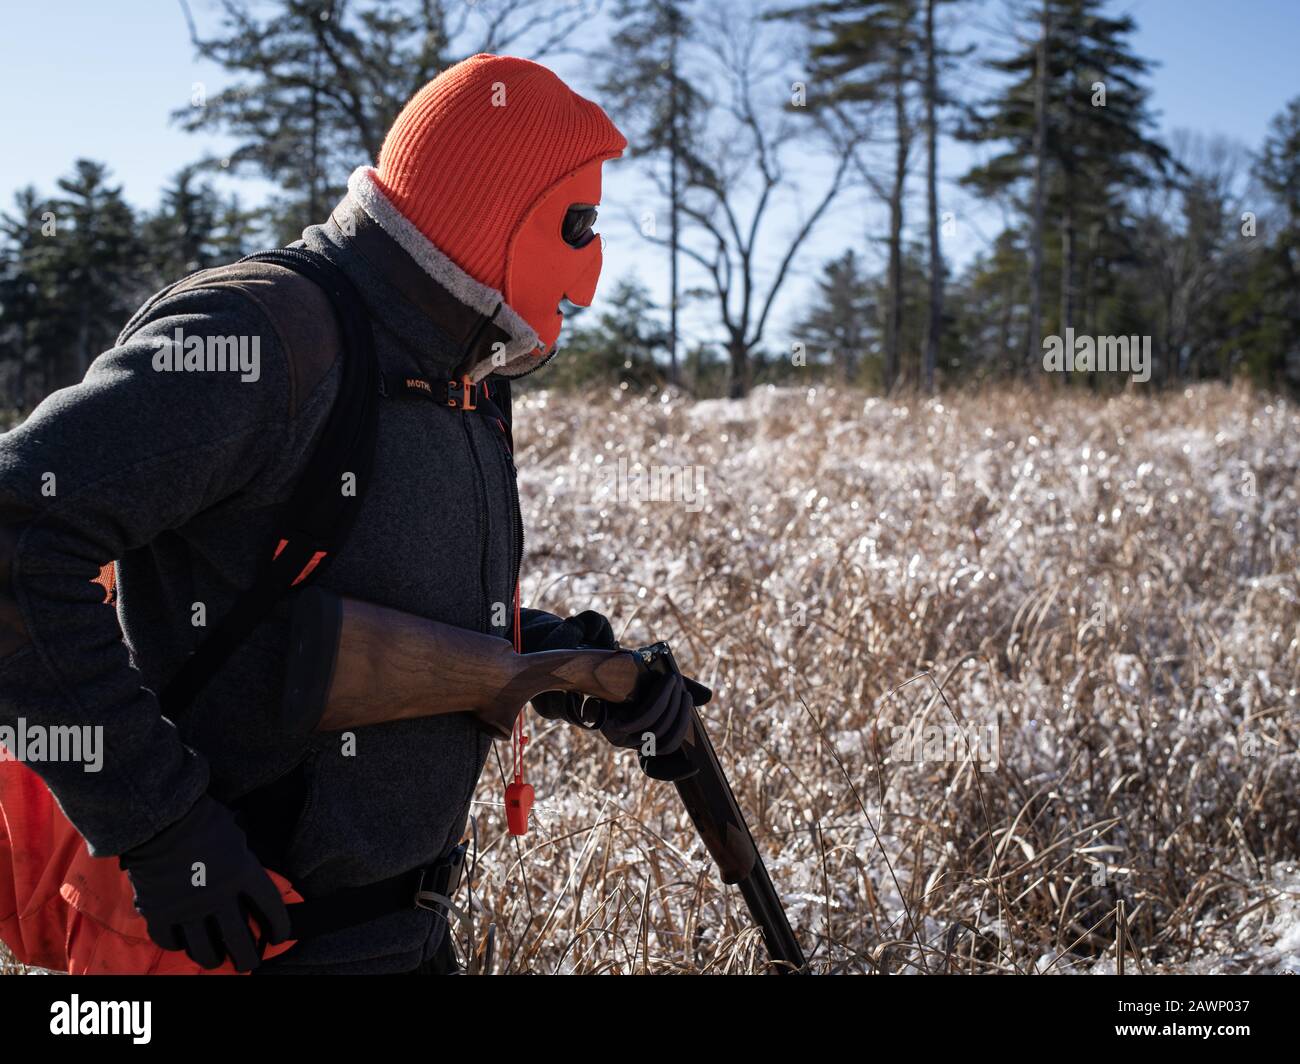 Mapleville Rhode Island, 20 de diciembre de 2019: Un cazador de aves Que Lleva una máscara y Recarga de una escopeta Foto de stock